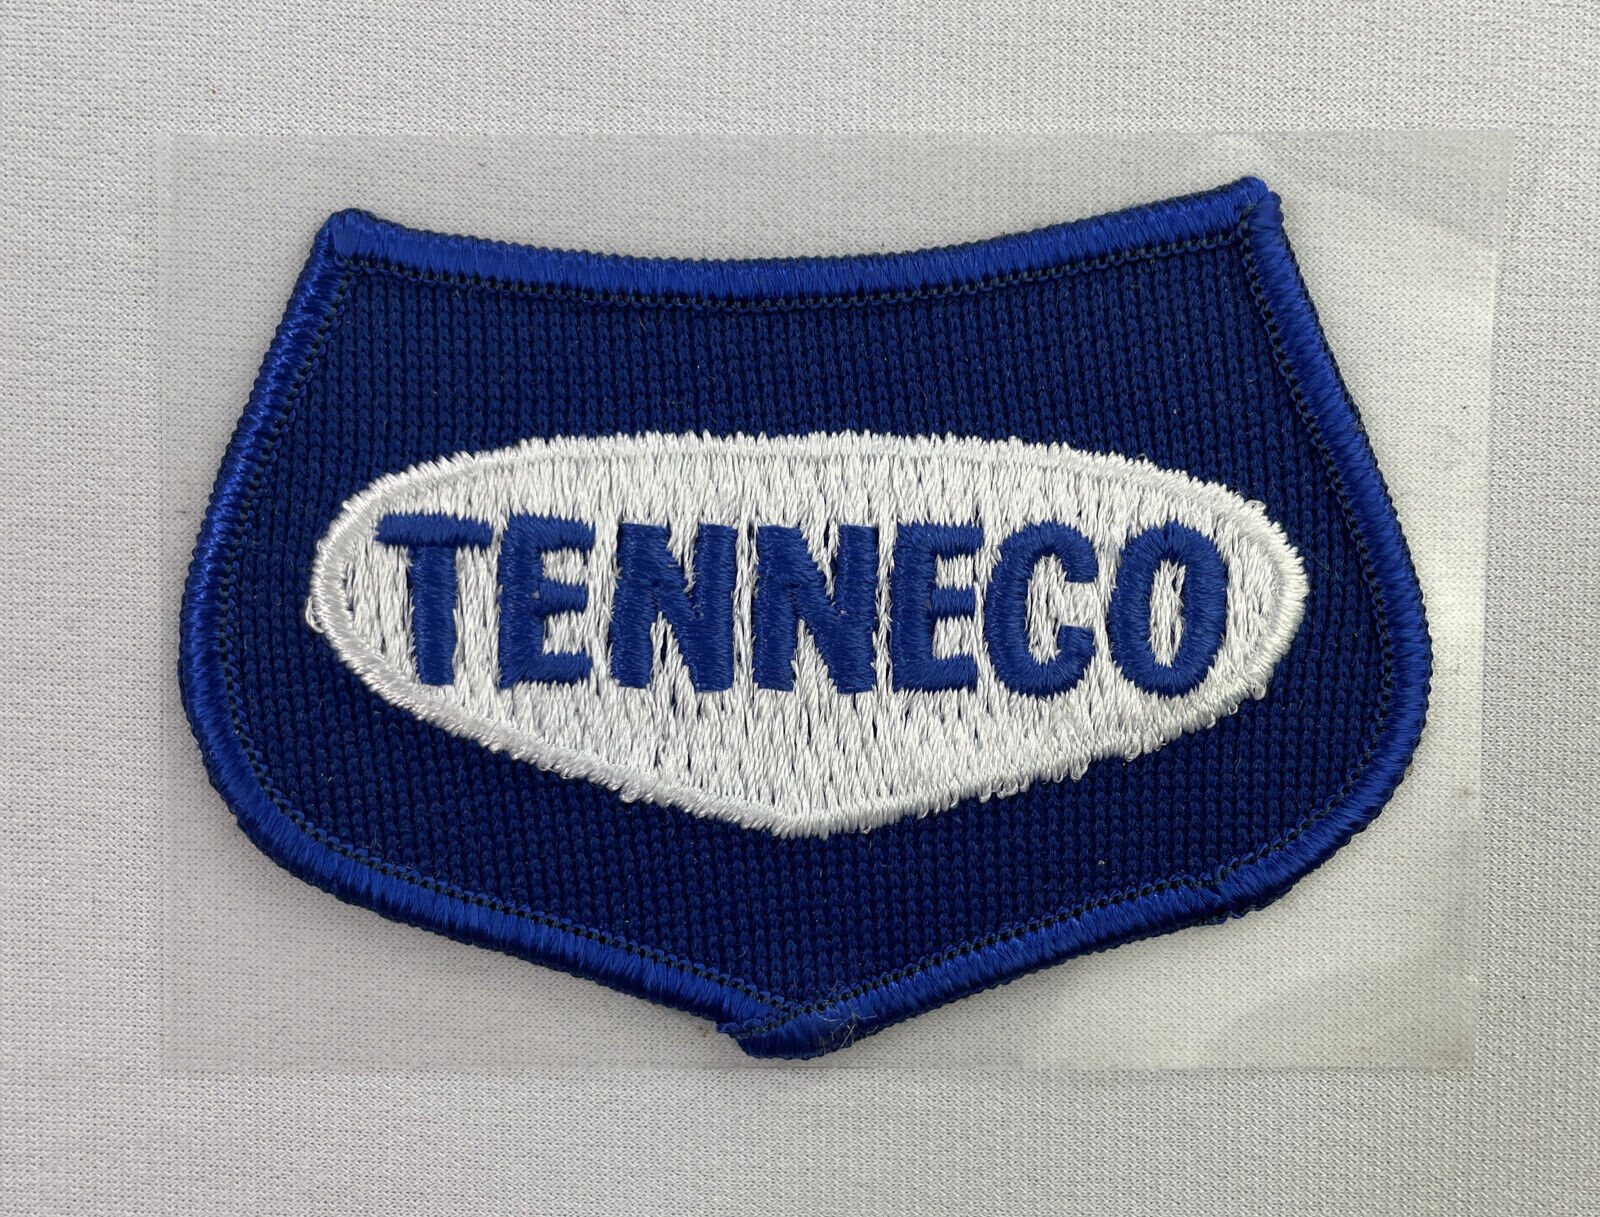 Tenneco Oil & Gas Vintage Patch